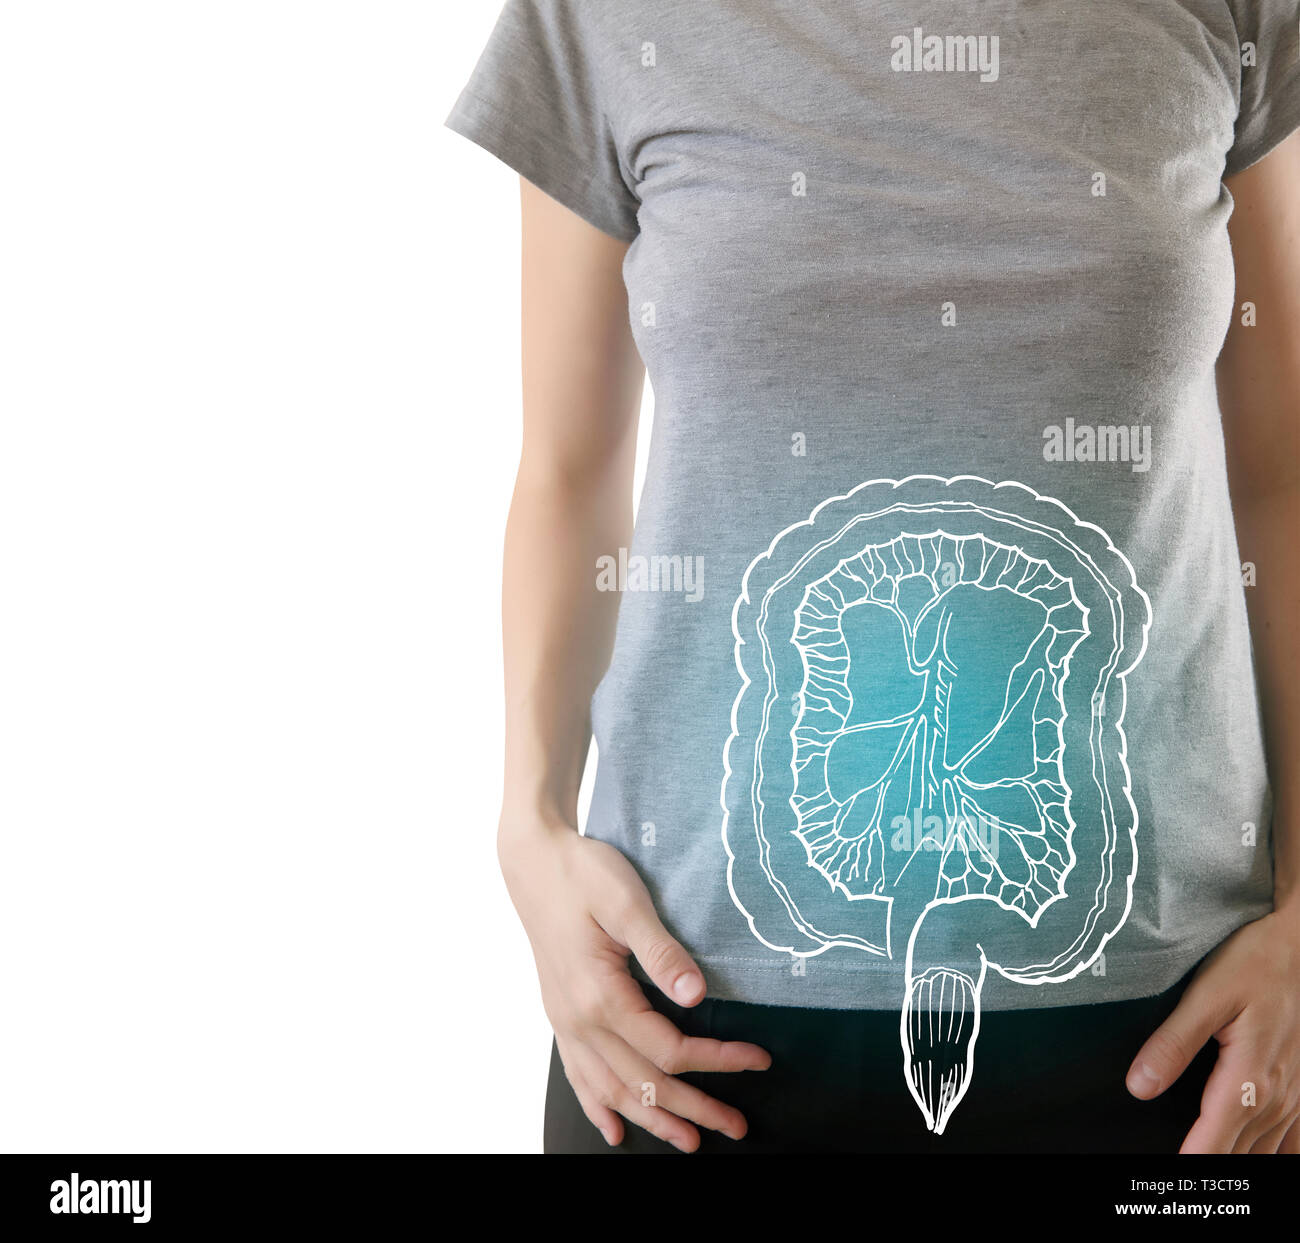 Digital composite der blau markierte gesunder Darm der Frau/Gesundheit & Medizin Konzept Stockfoto